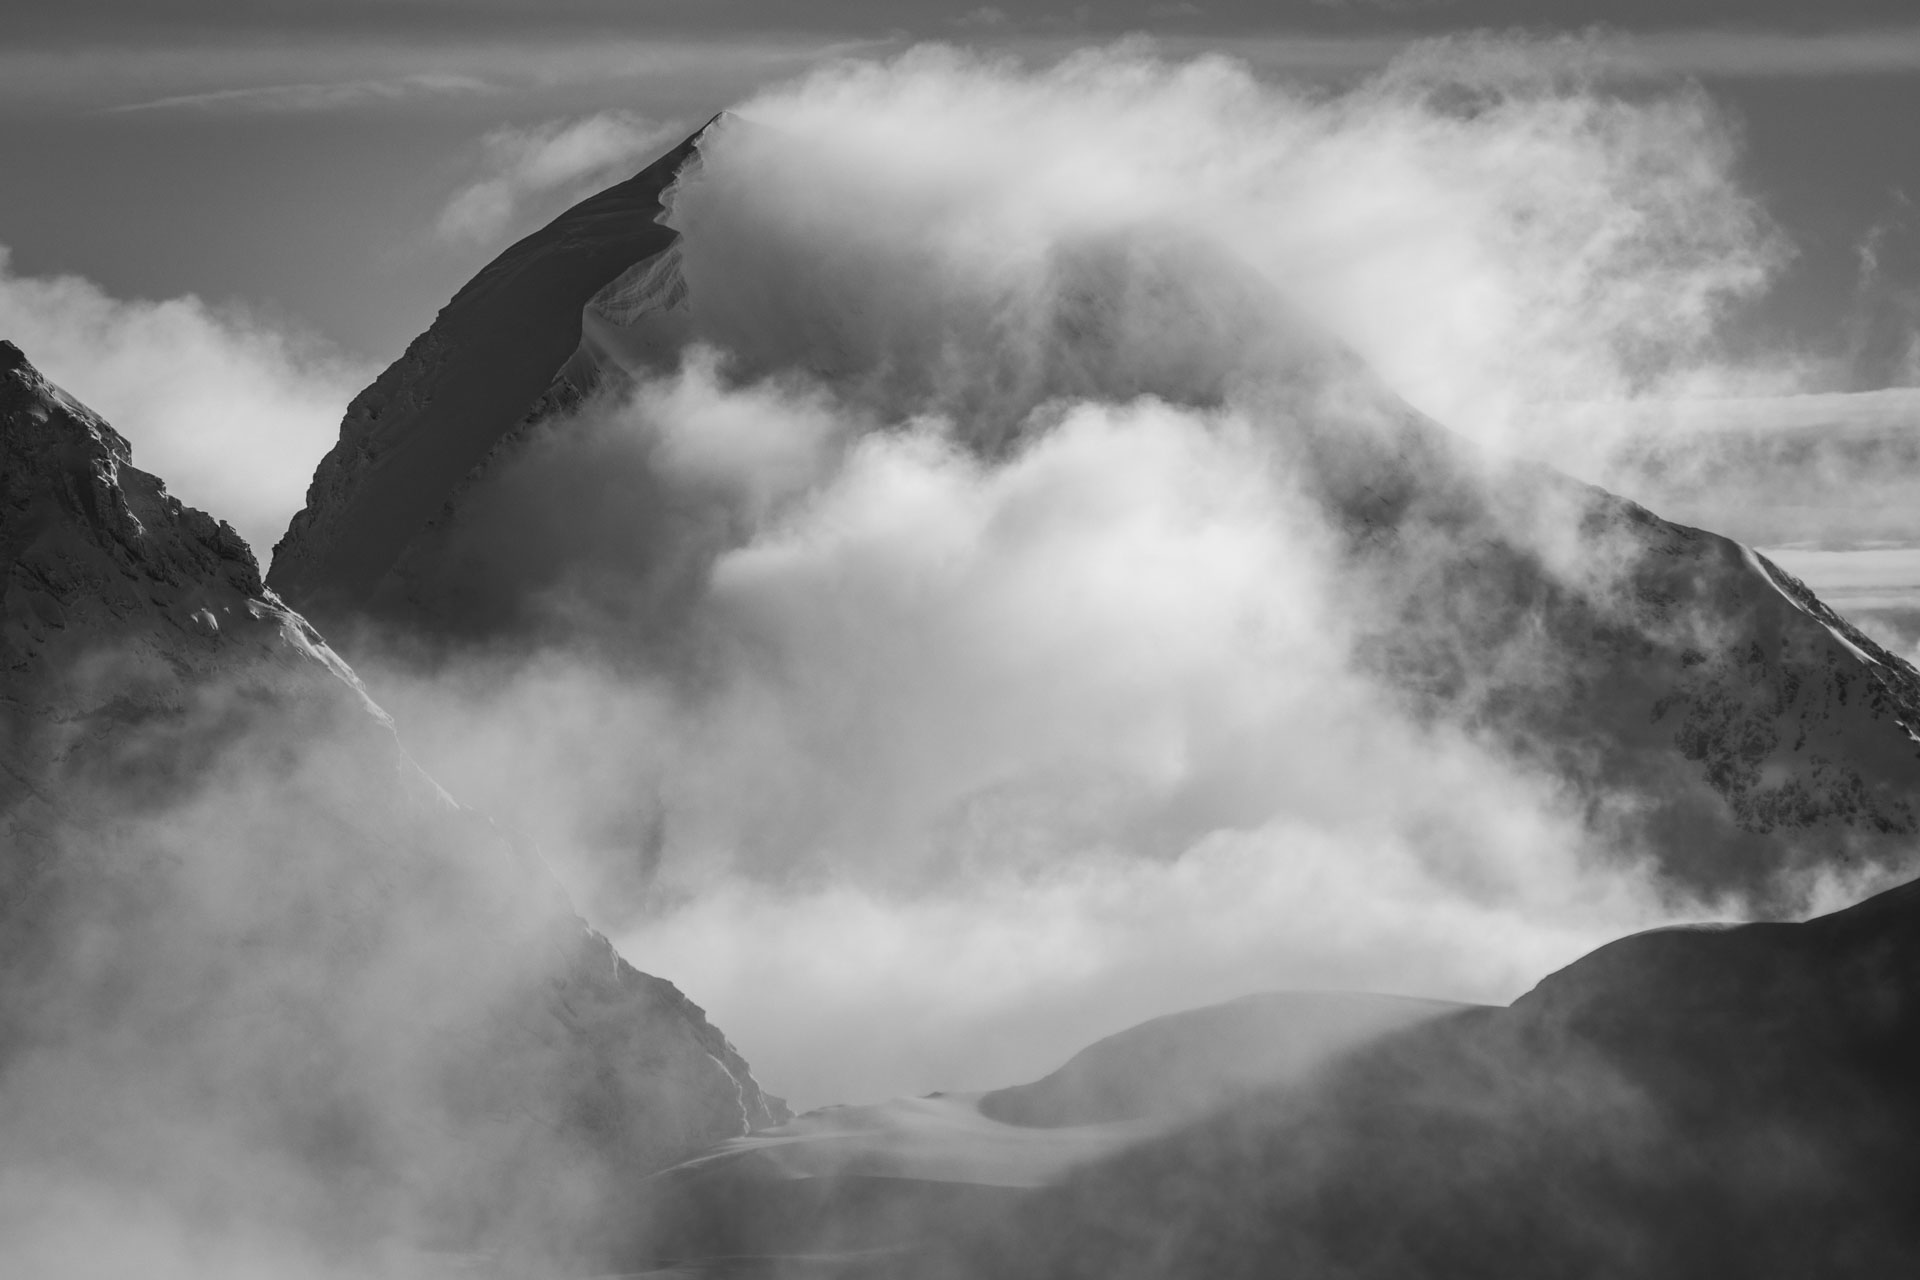 Monch - Encadrement photo en ligne d'un glacier des alpes Bernoises dans le brouillard et une mer de nuages